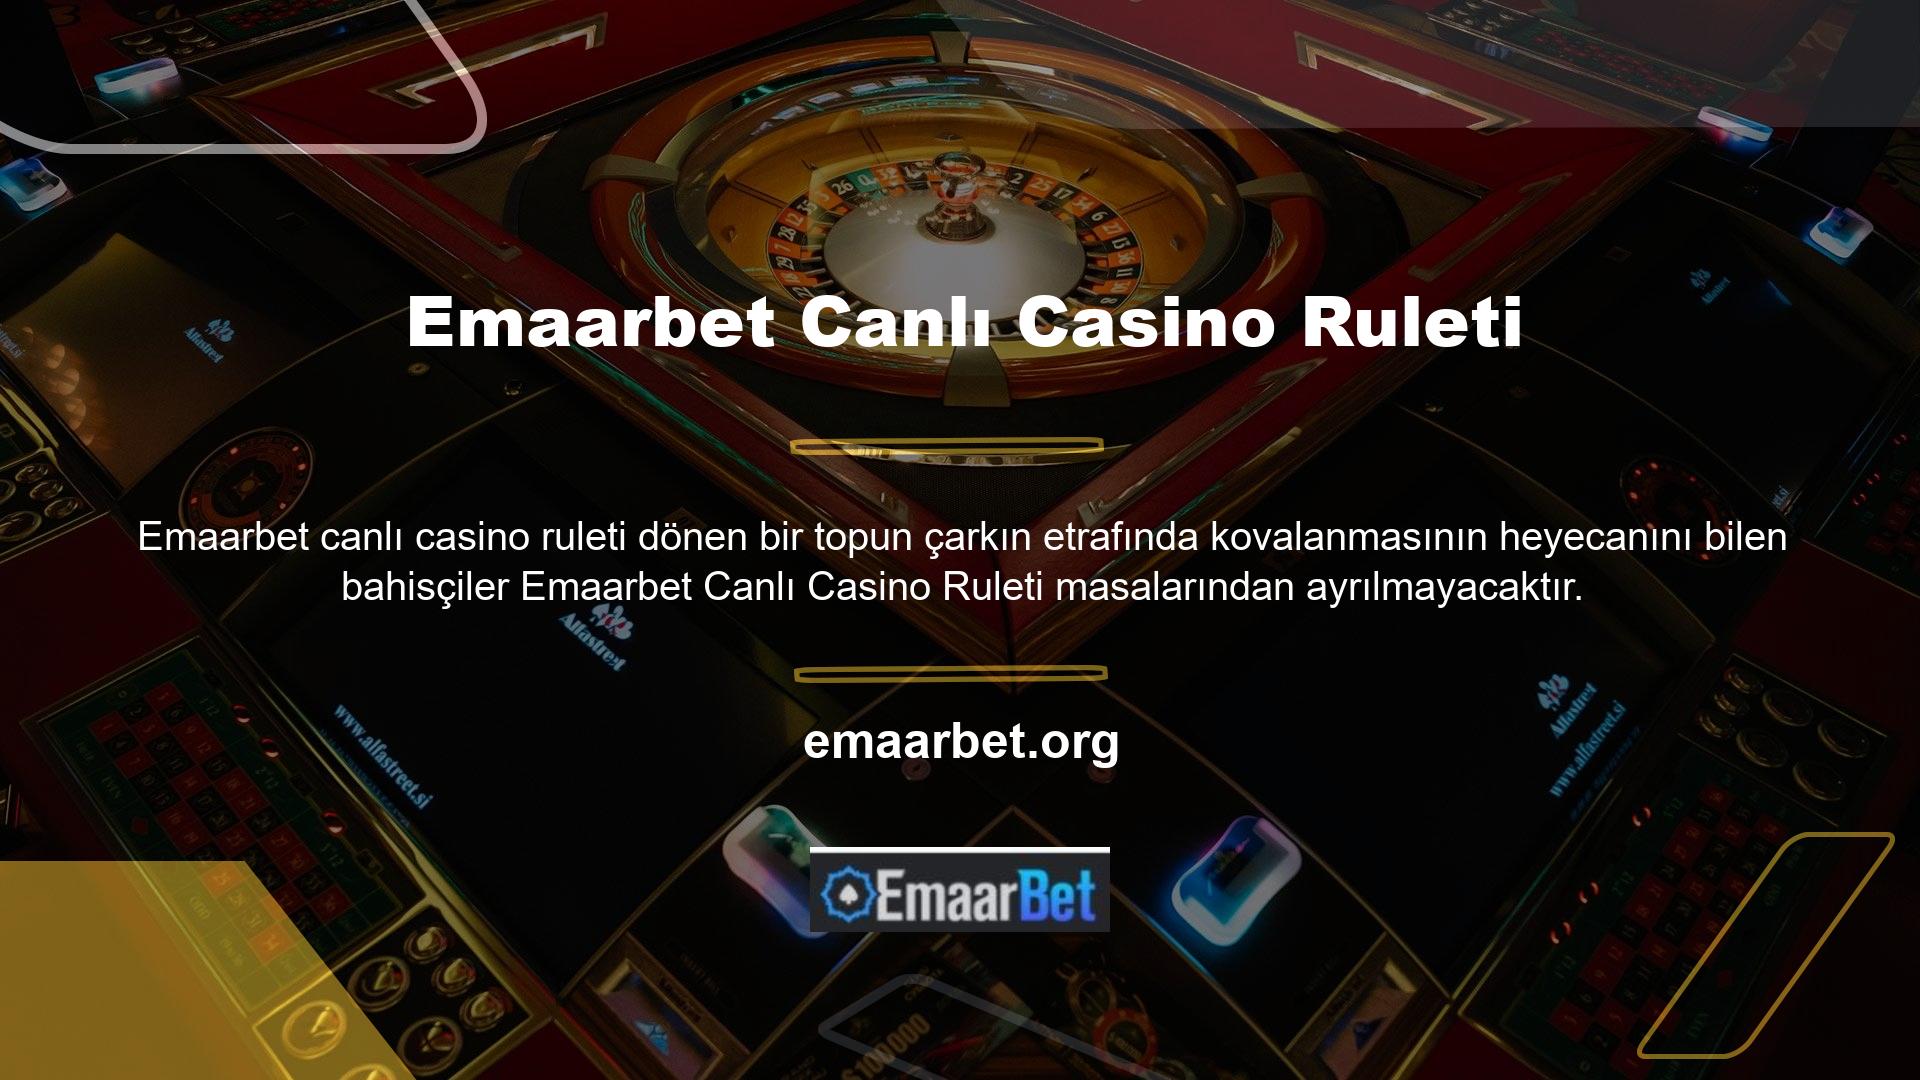 Emaarbet Casino, her gün güncellenen yeni oyunların yer aldığı 40 farklı rulet masasına sahiptir